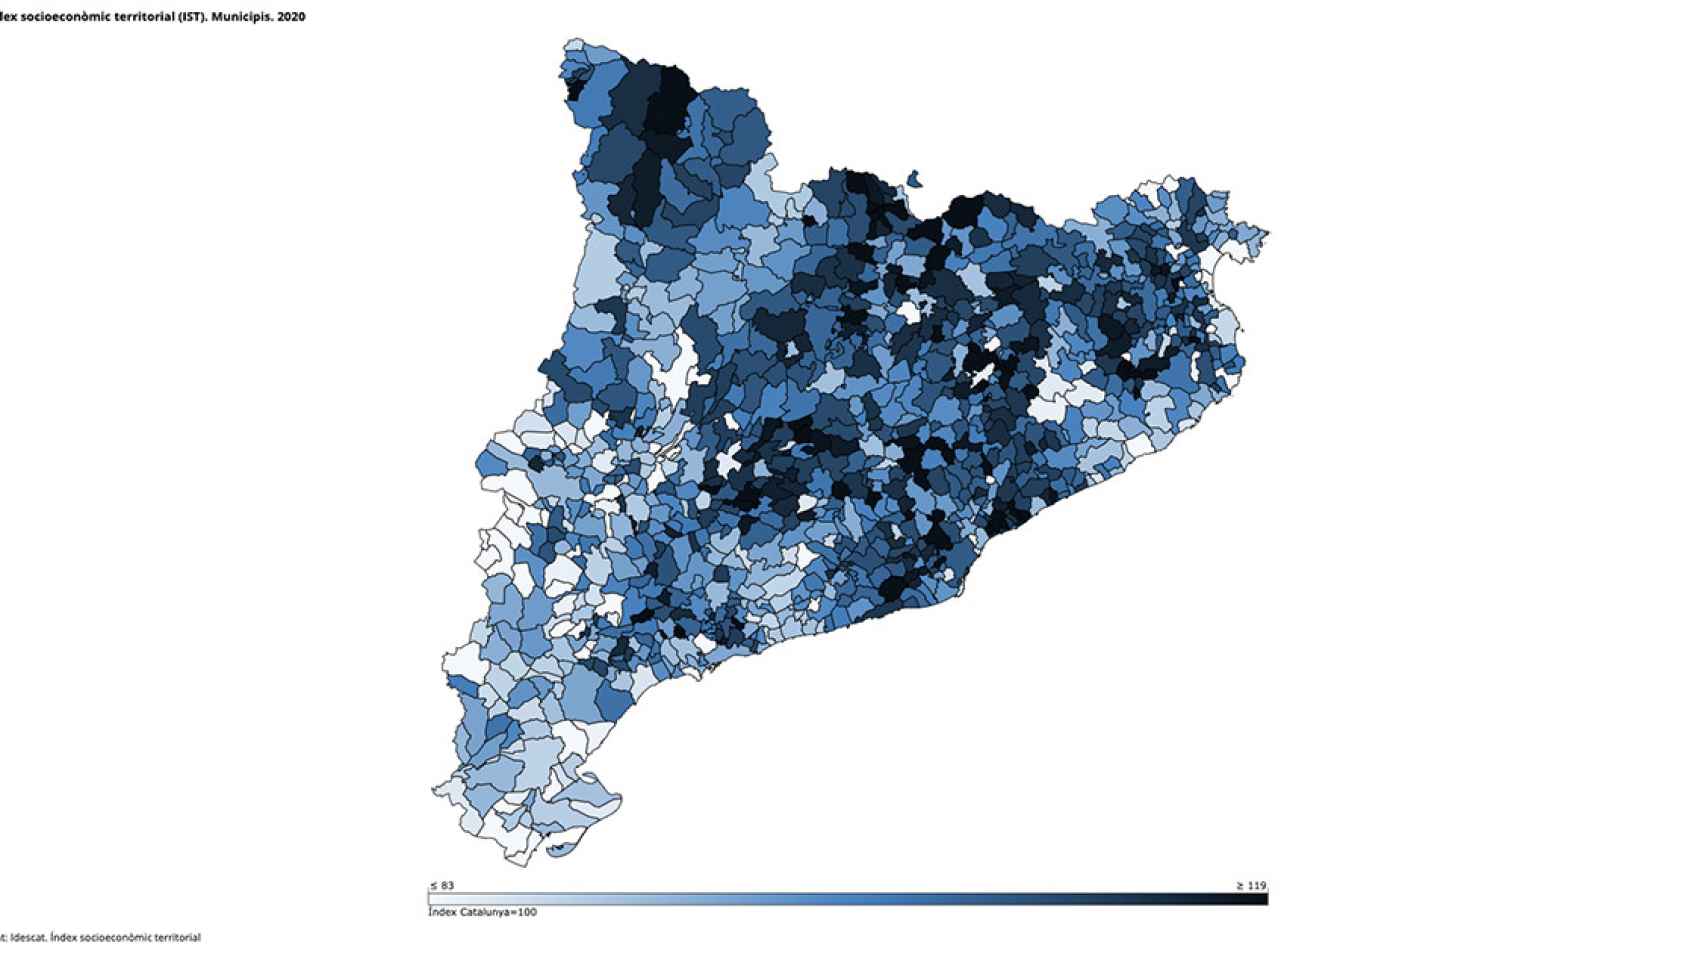 Mapa de los municipios catalanes en función de su situación socioeconómica